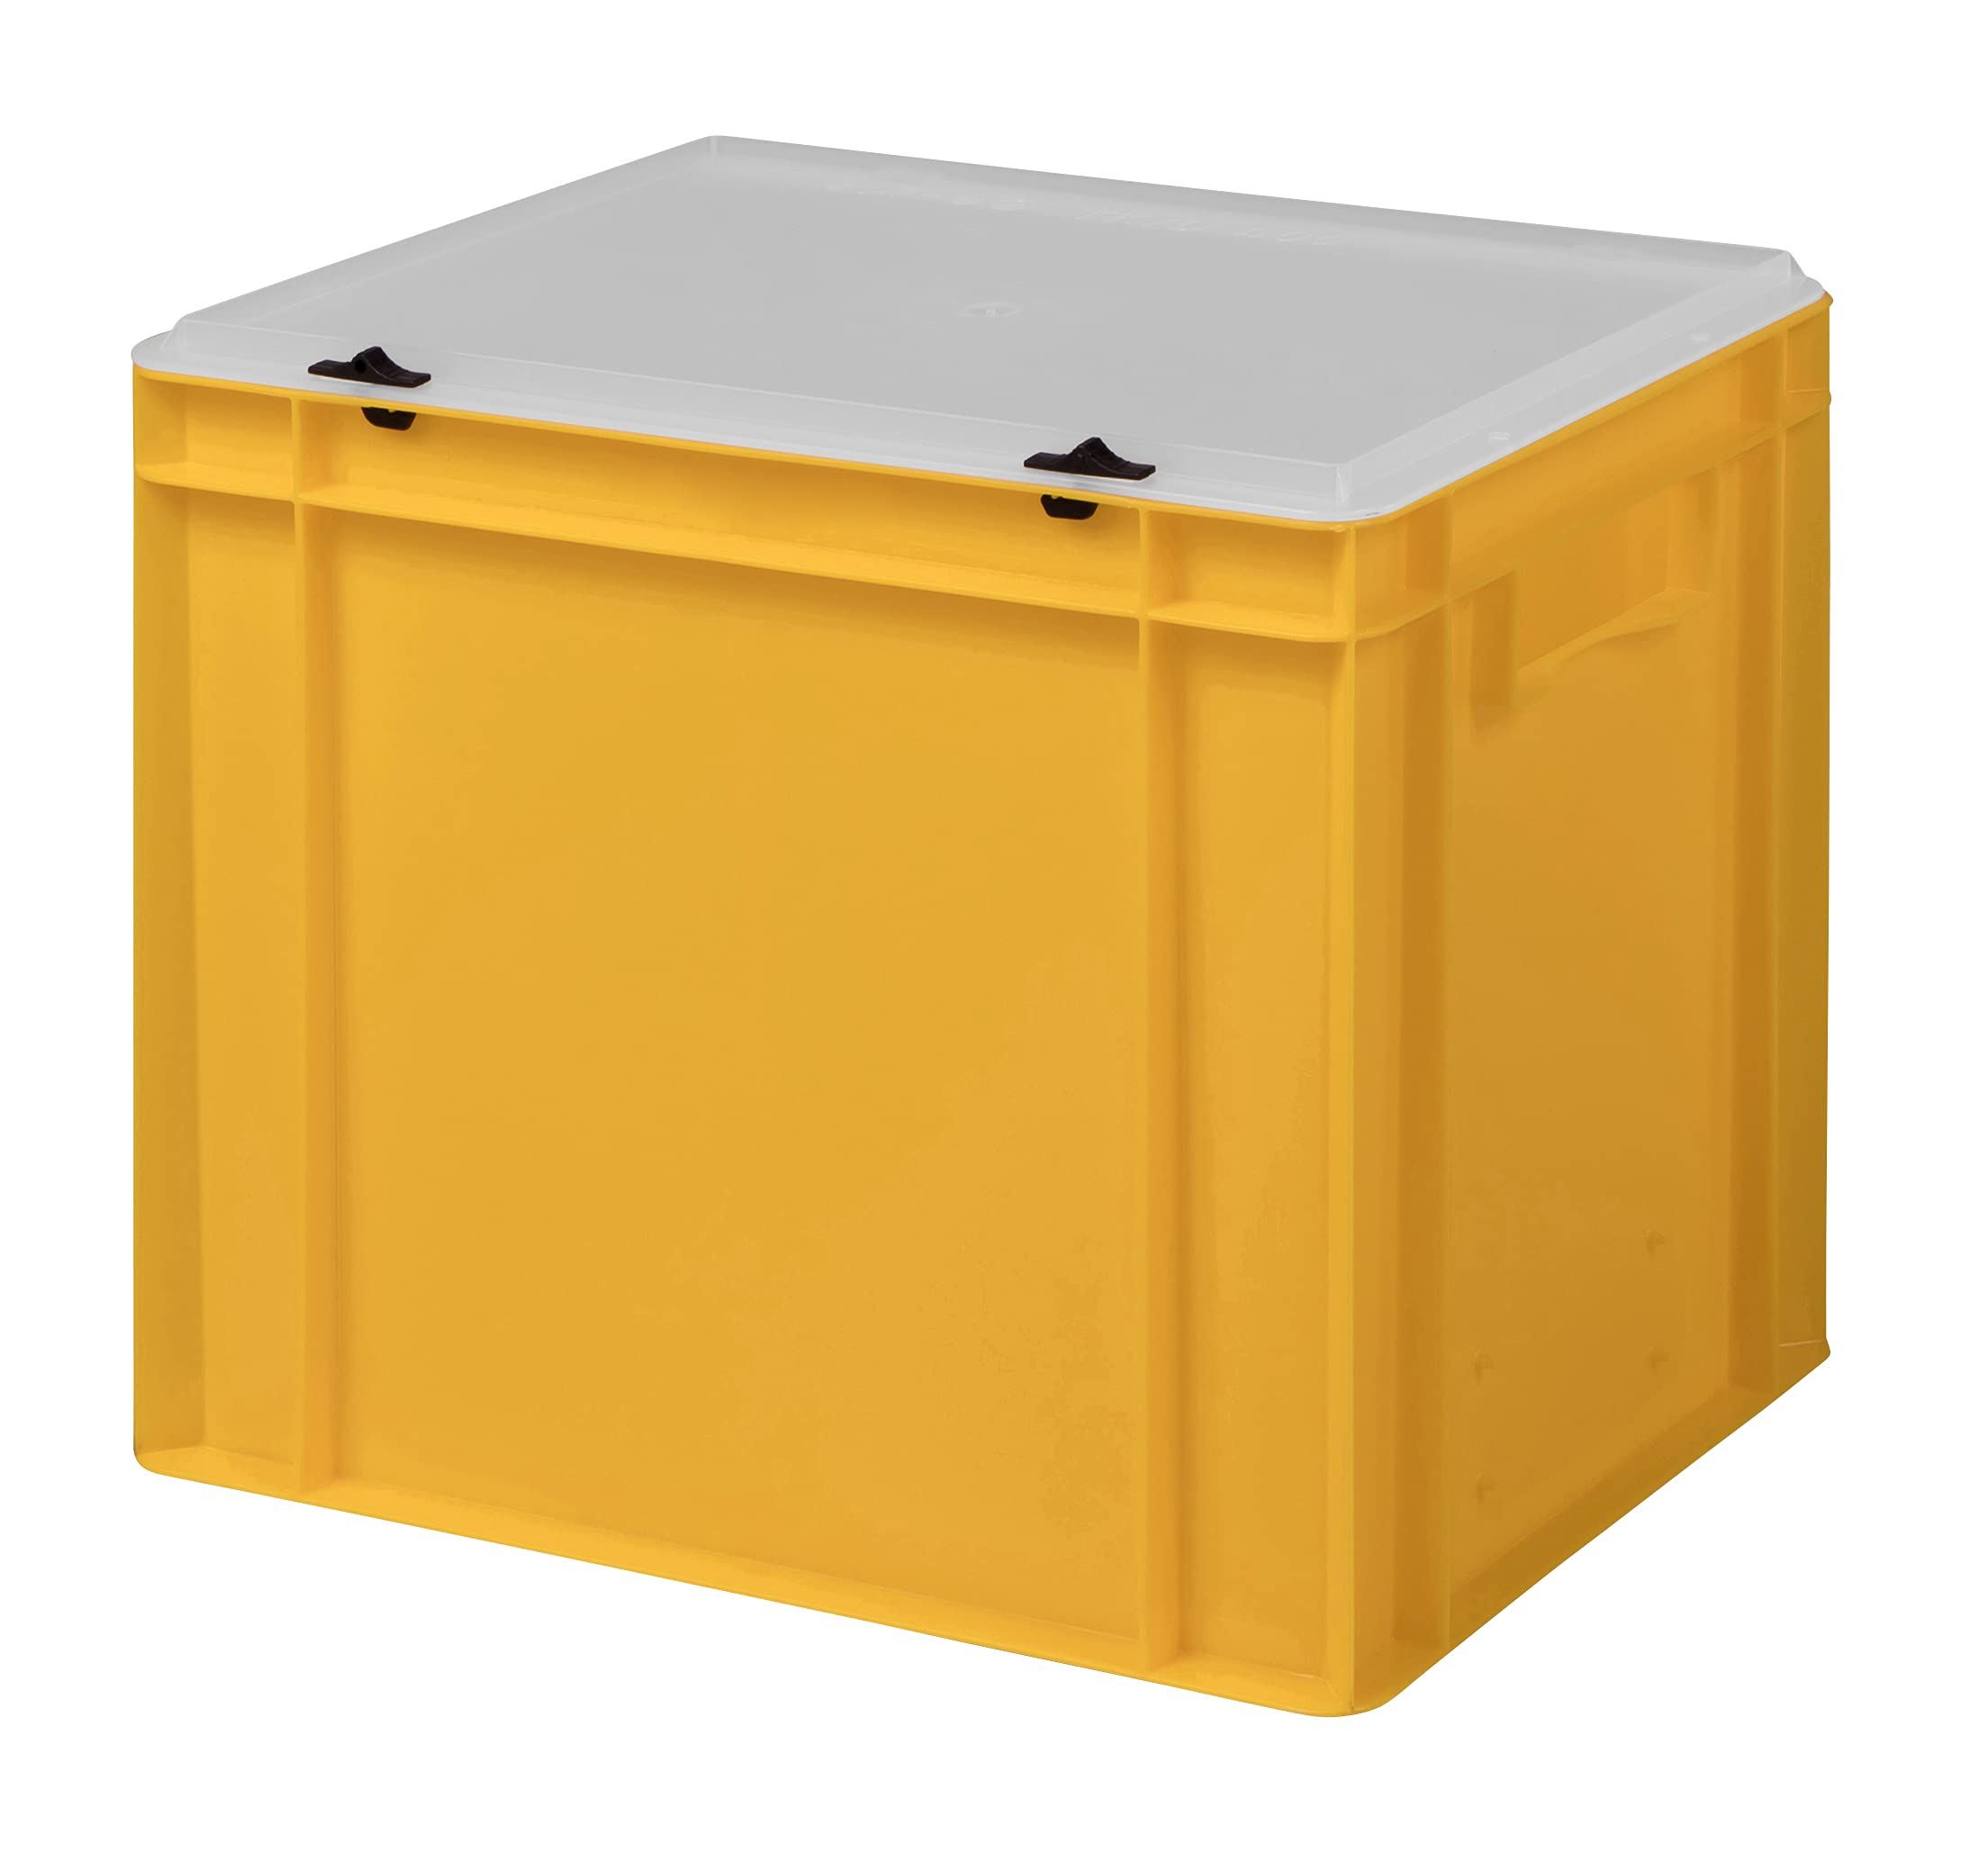 1a-TopStore Design Eurobox Stapelbox Lagerbehälter Kunststoffbox in 5 Farben und 16 Größen mit transparentem Deckel (matt) (gelb, 40x30x33 cm)